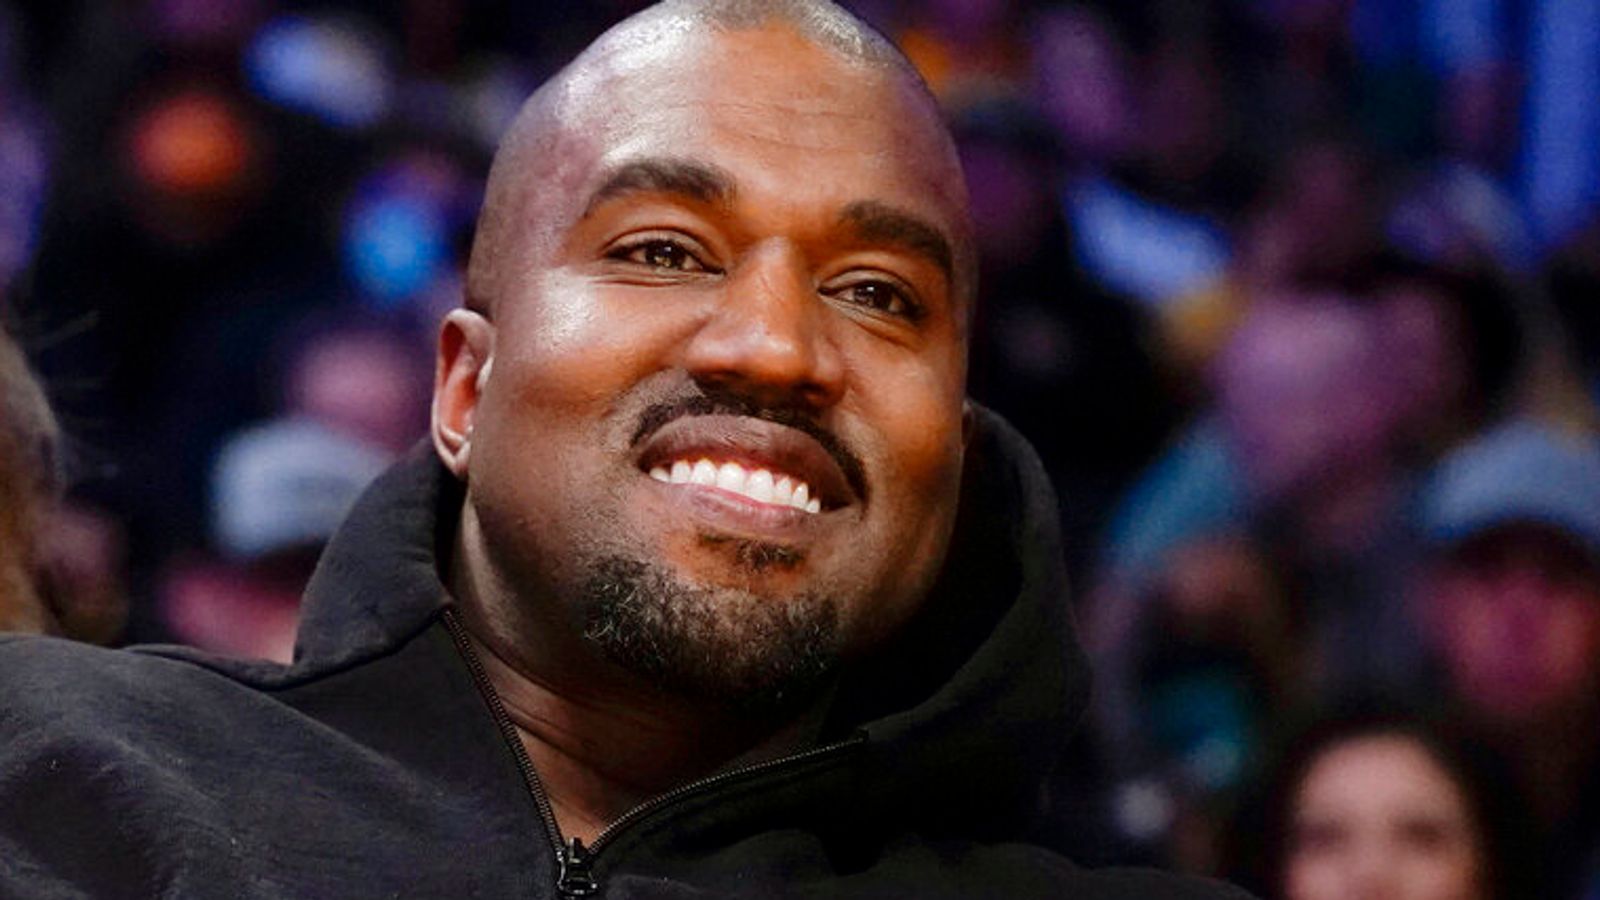 Kanye West memiliki ‘obsesi Nazi yang menjijikkan, penuh kebencian, dan aneh’ menurut klaim mantan kolaborator |  Berita AS